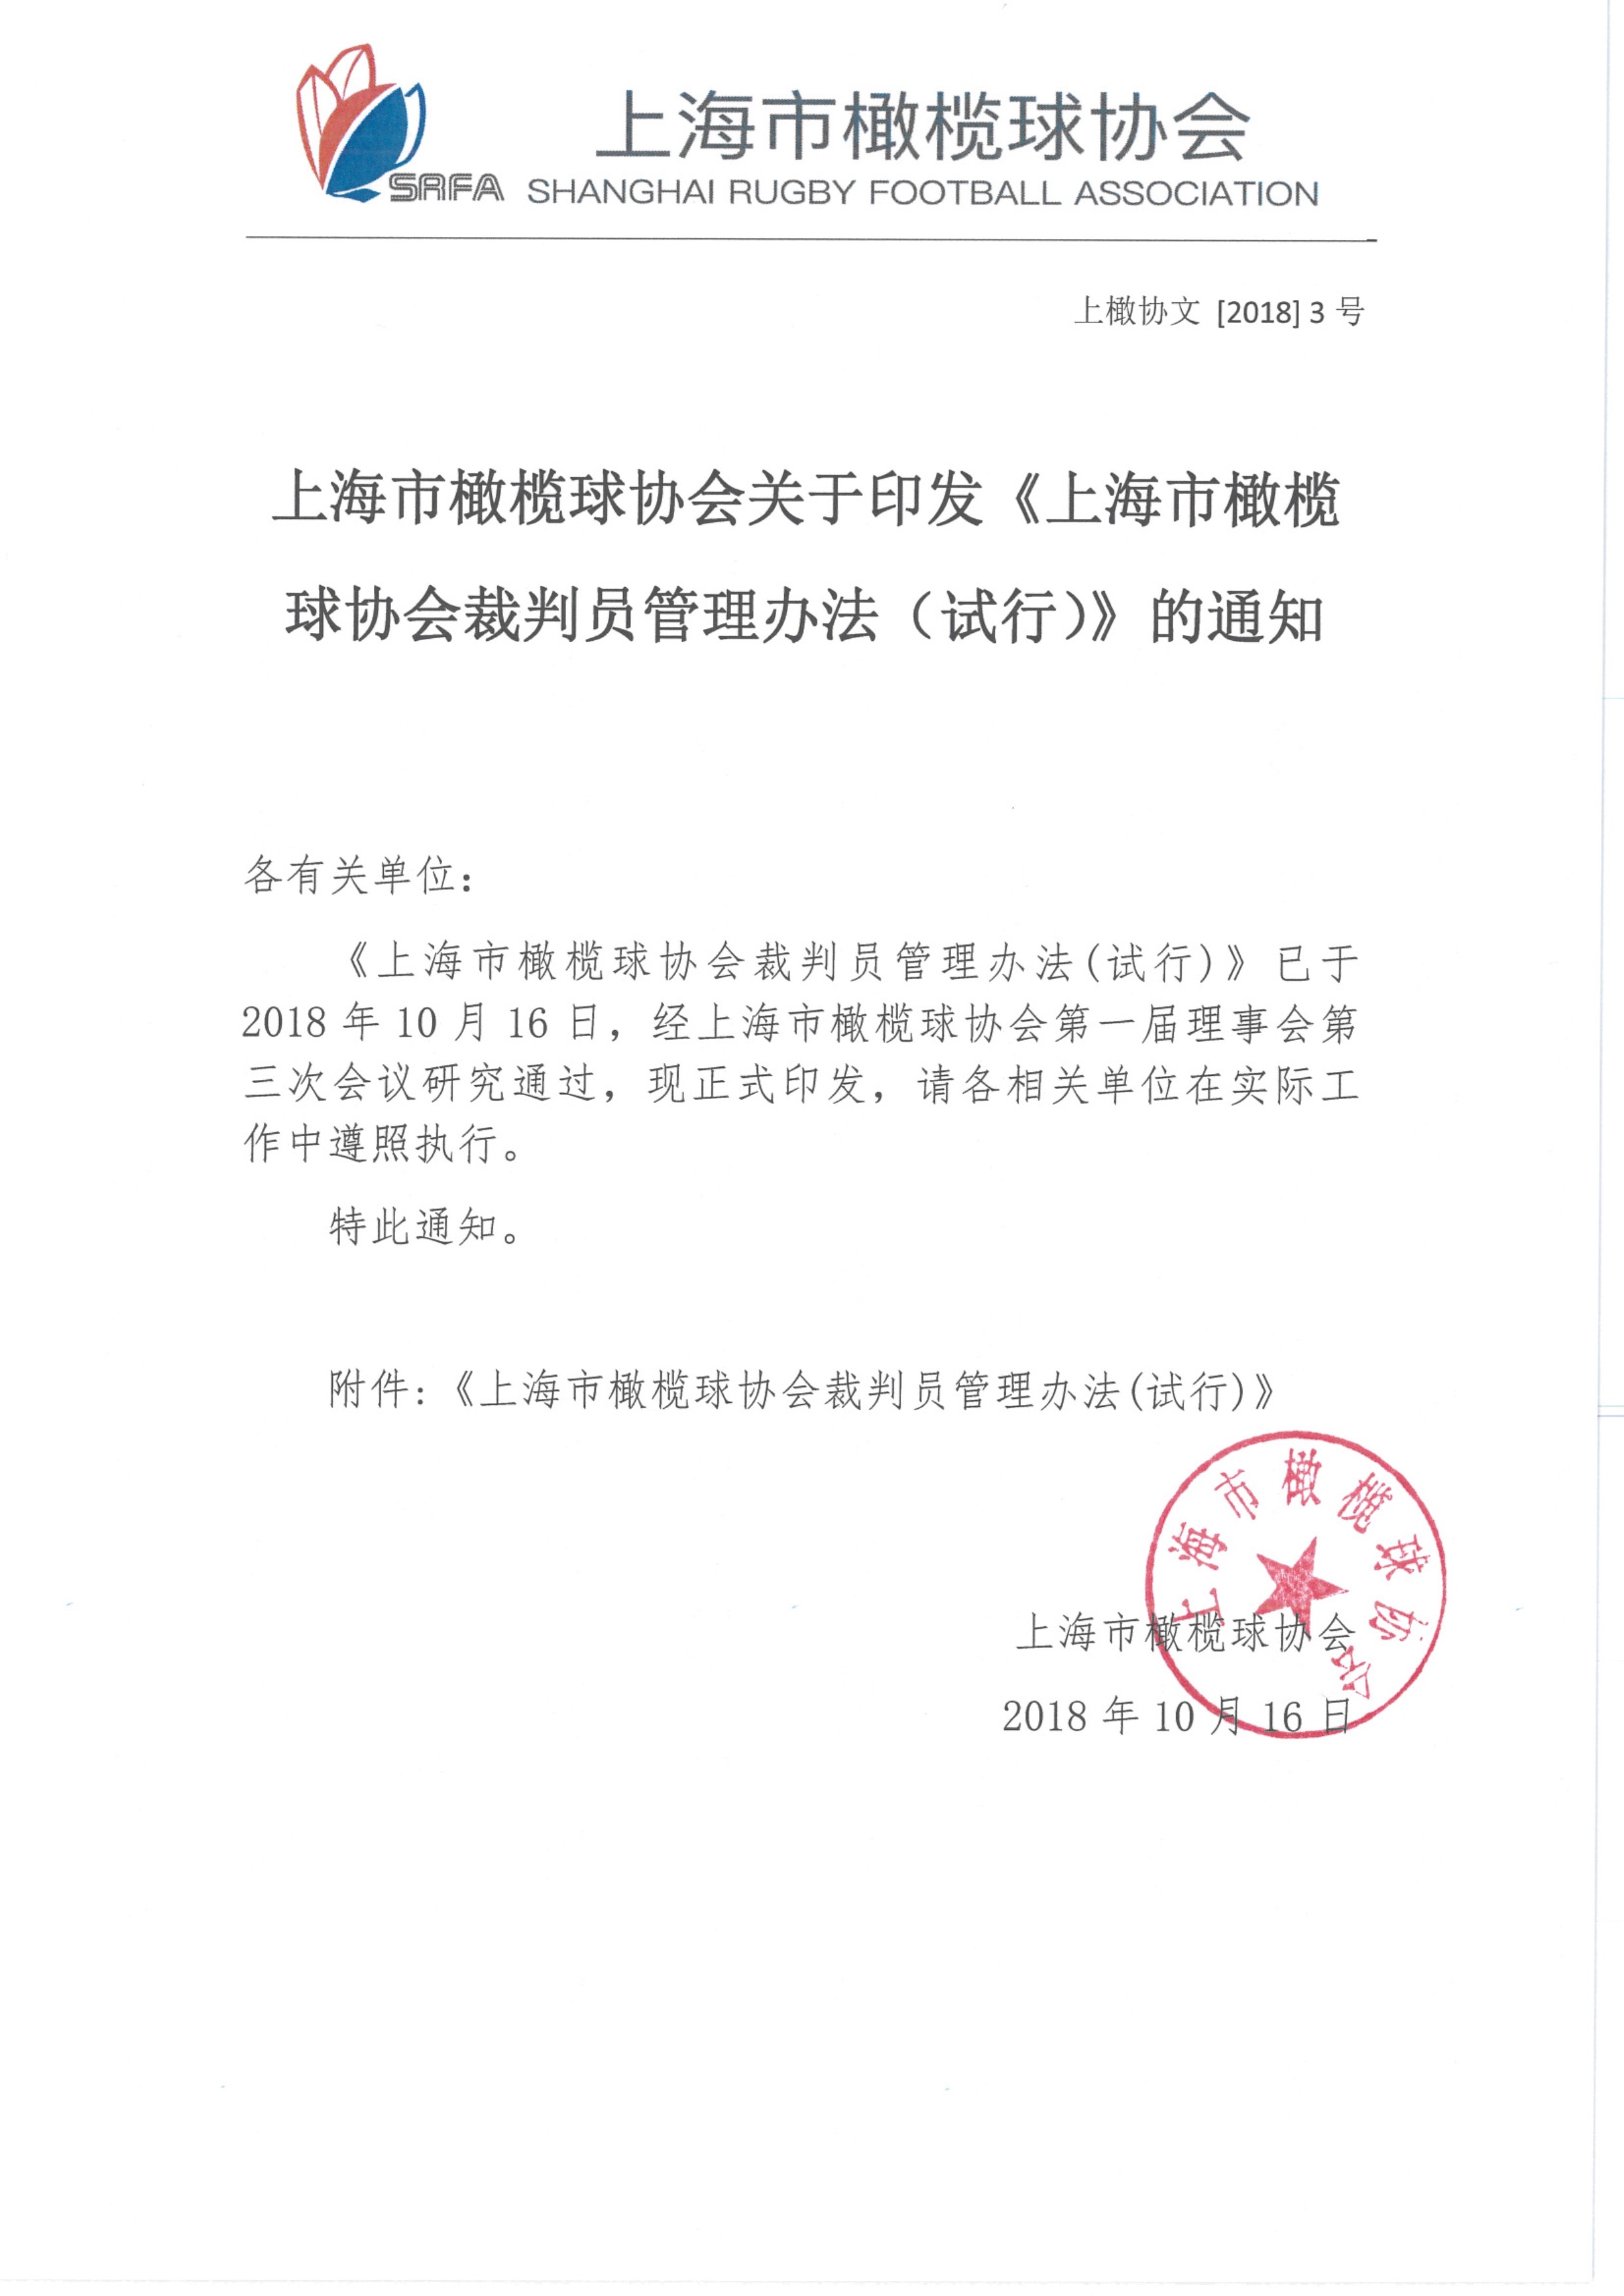 101817031885_0上海市橄榄球协会关于印发《上海市橄榄球协会裁判员管理办法试行》的通知及裁判员管理办法附件_1